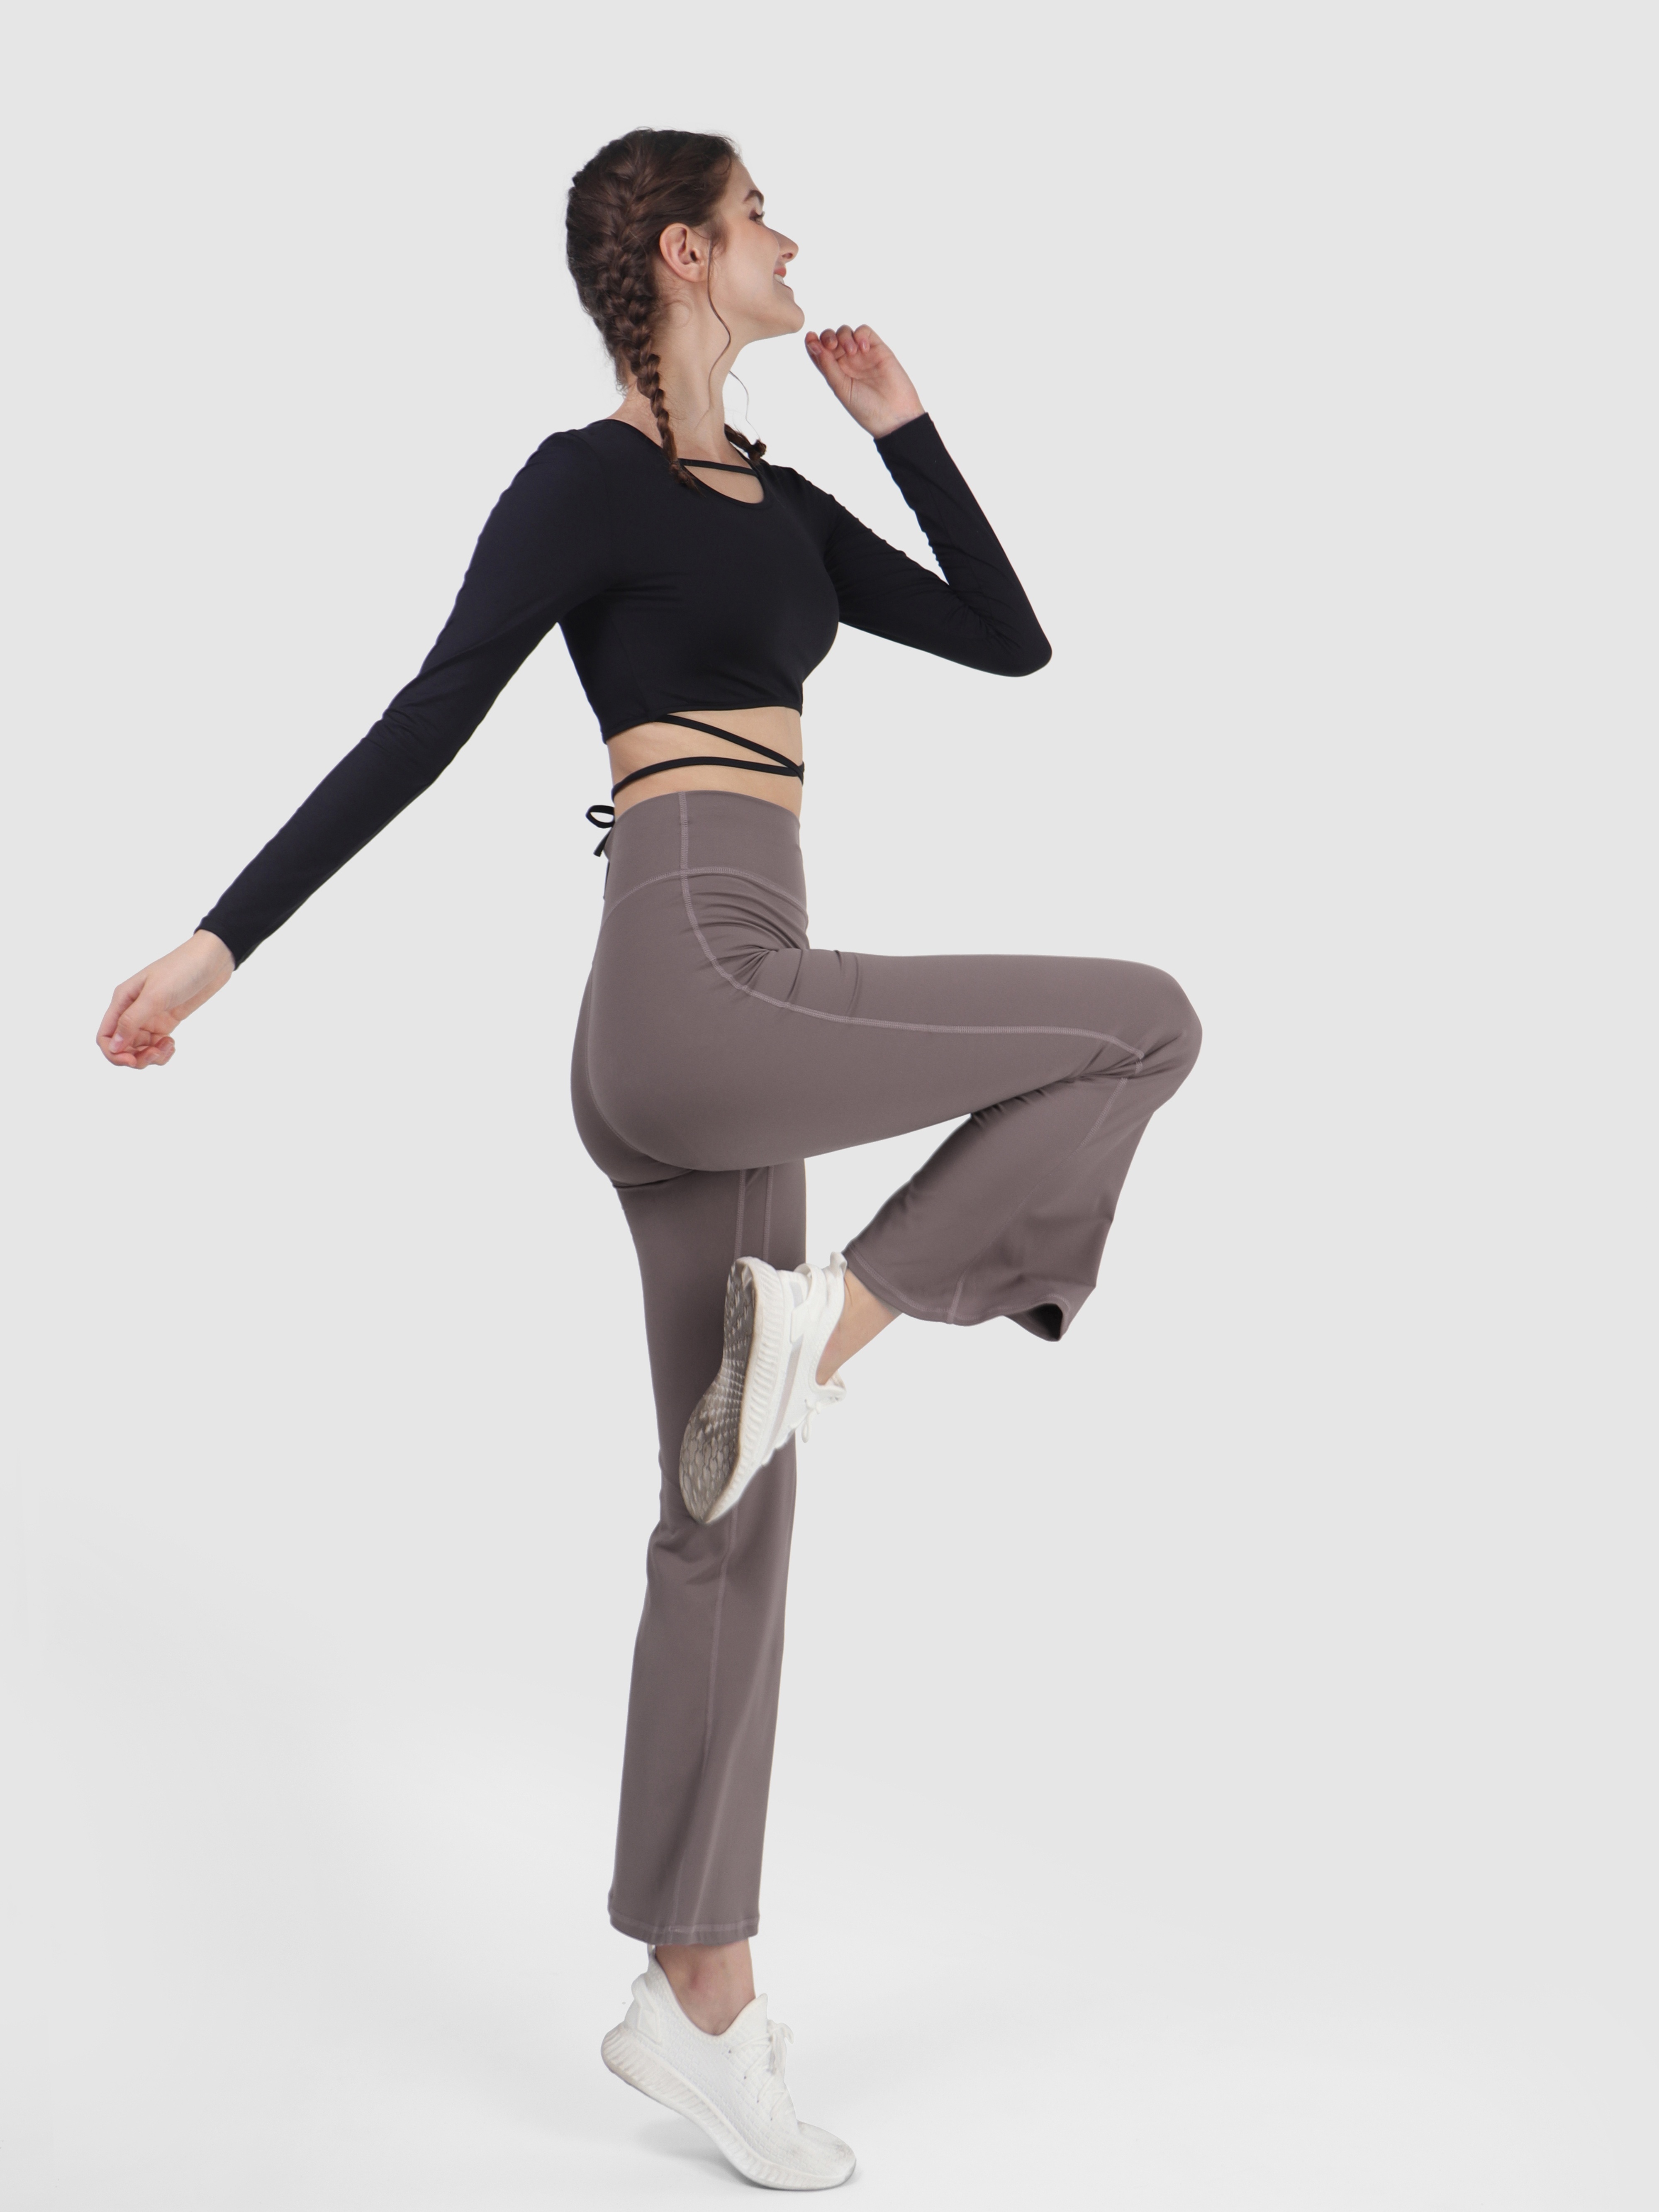 TQWQT Womens Bootcut Yoga Pants Leggings High Waisted Tummy